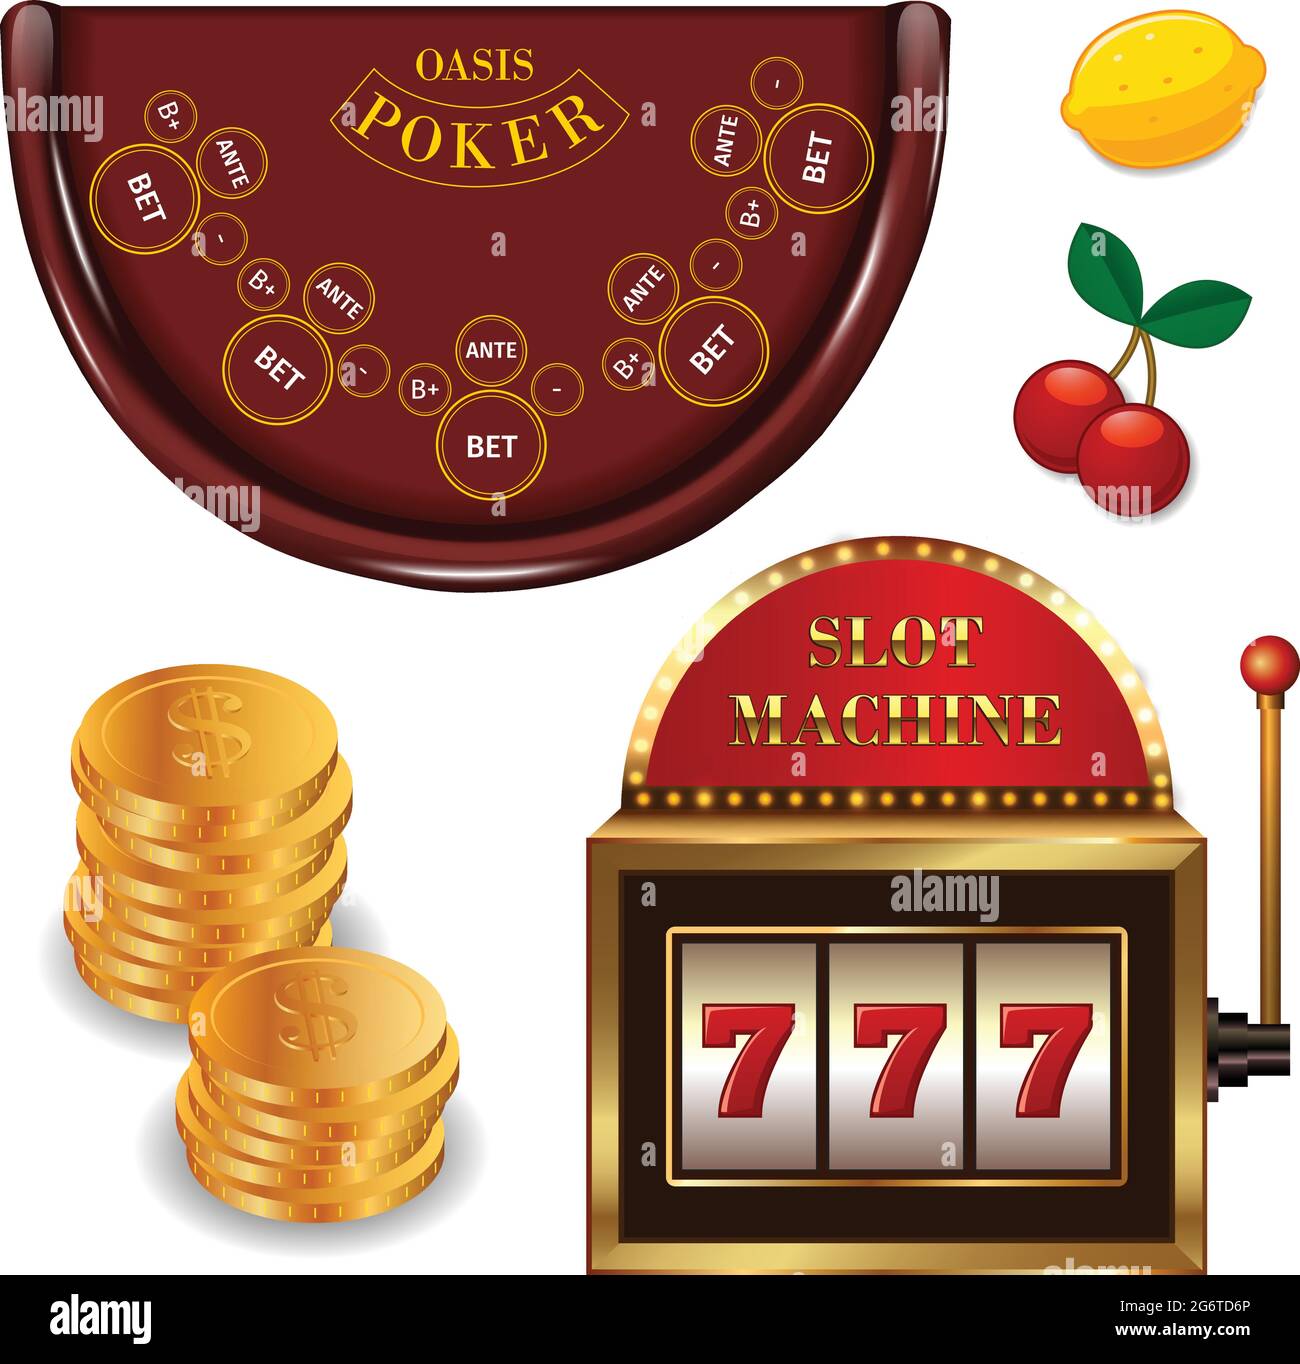 Голд казино онлайн бк фонбет на виндовс